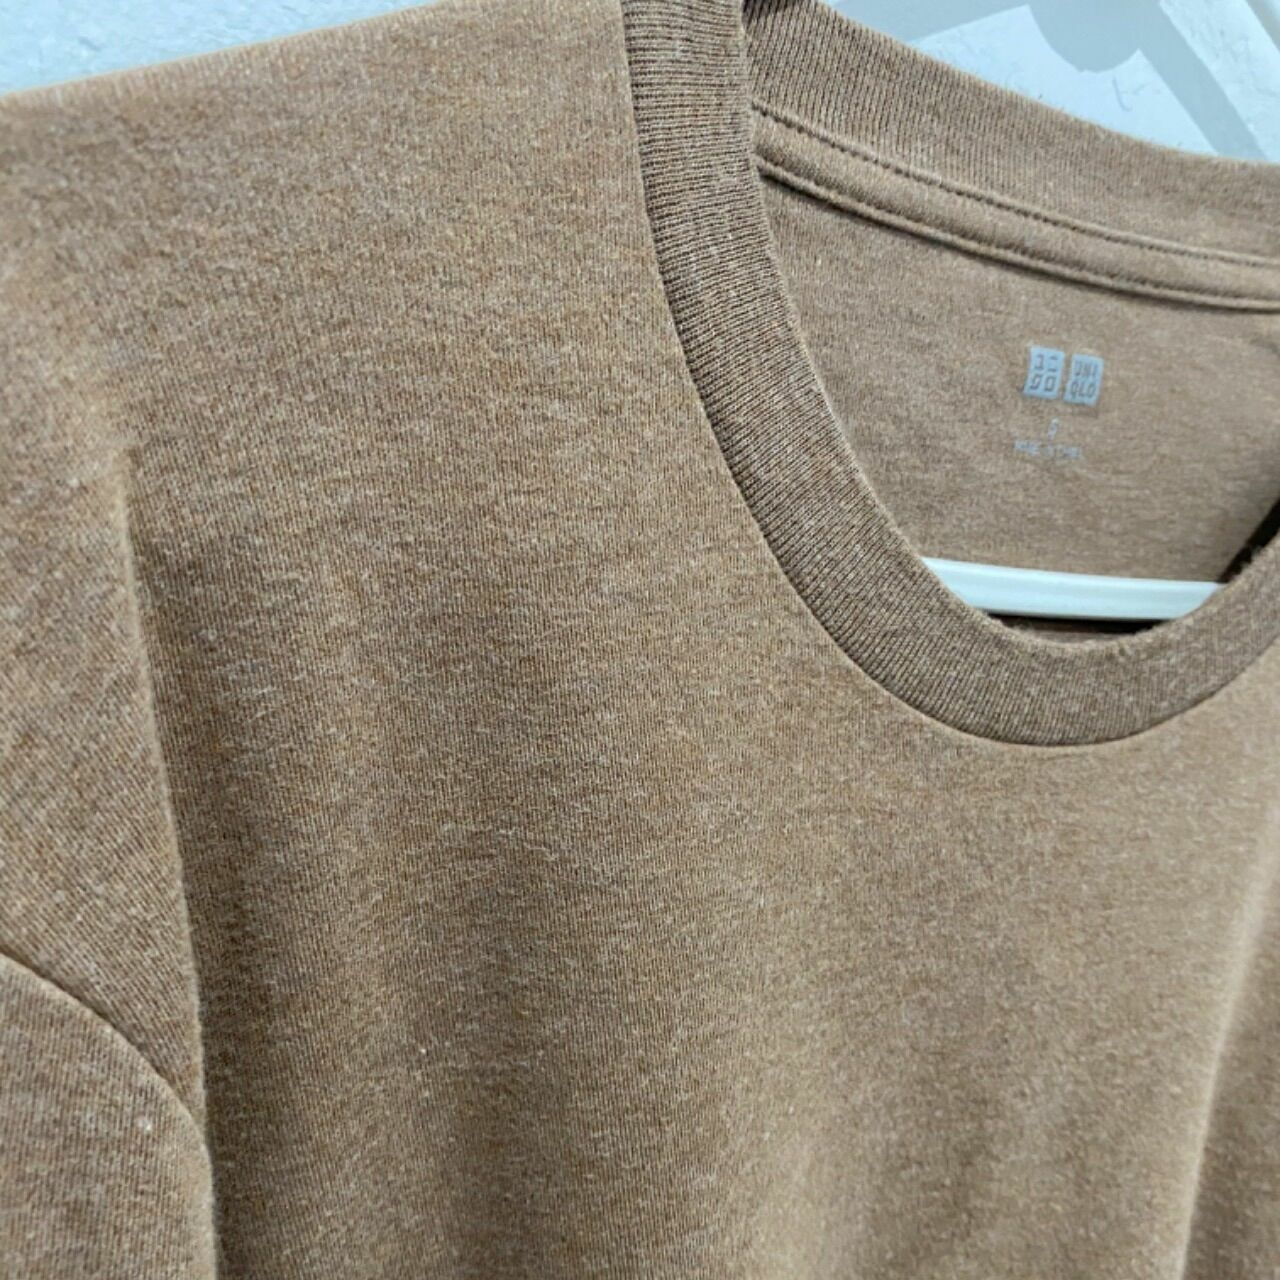 UNIQLO Brown Sweater